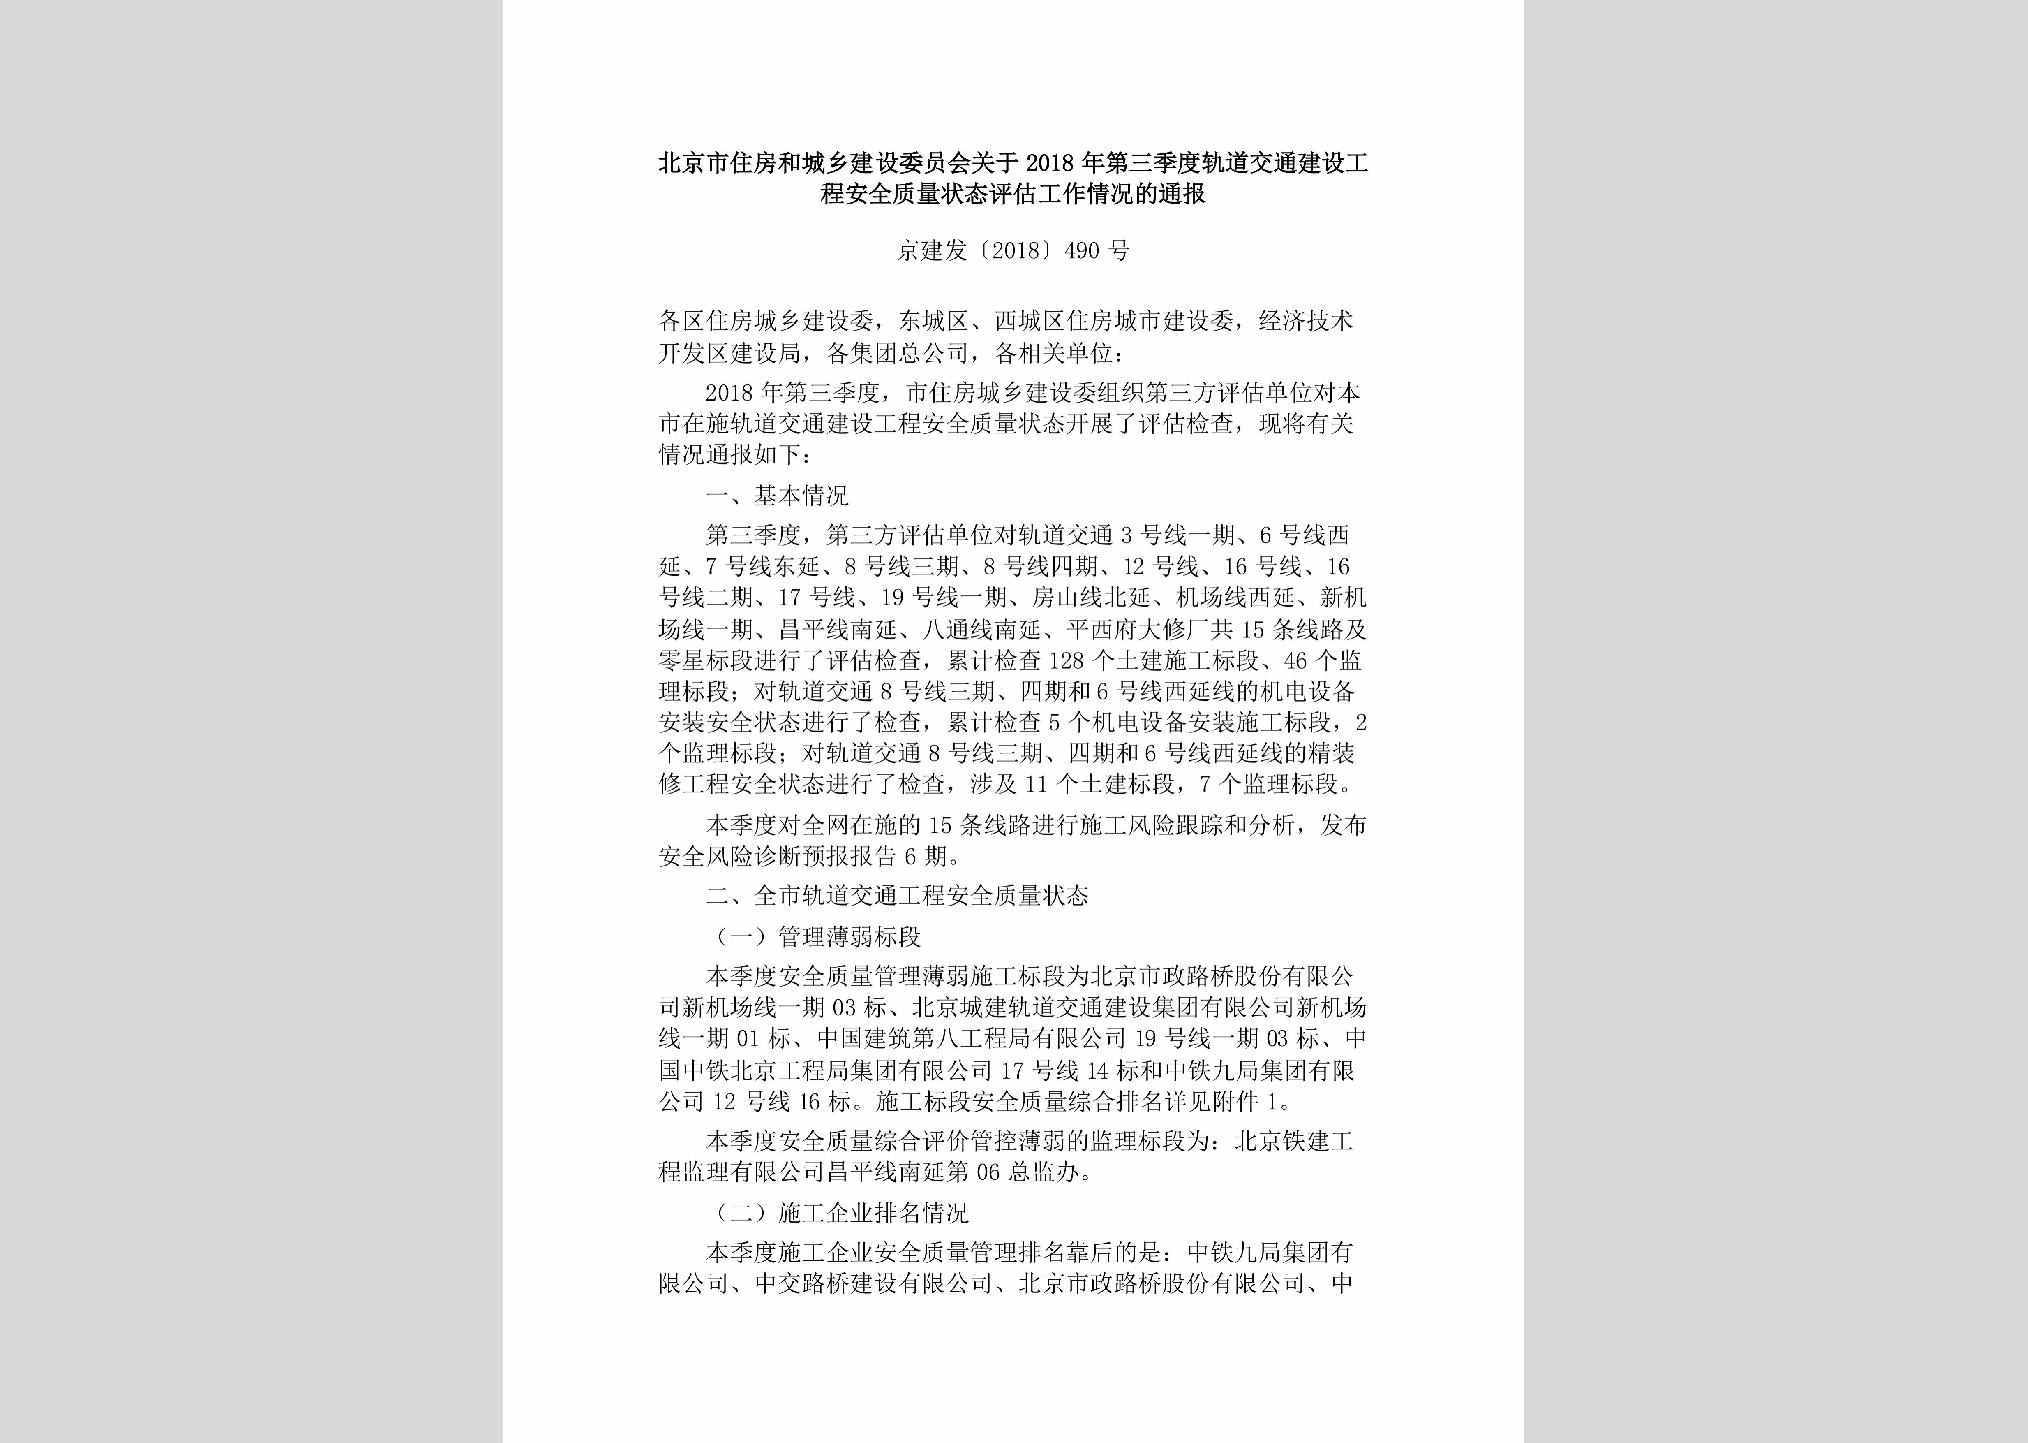 京建发[2018]490号：北京市住房和城乡建设委员会关于2018年第三季度轨道交通建设工程安全质量状态评估工作情况的通报